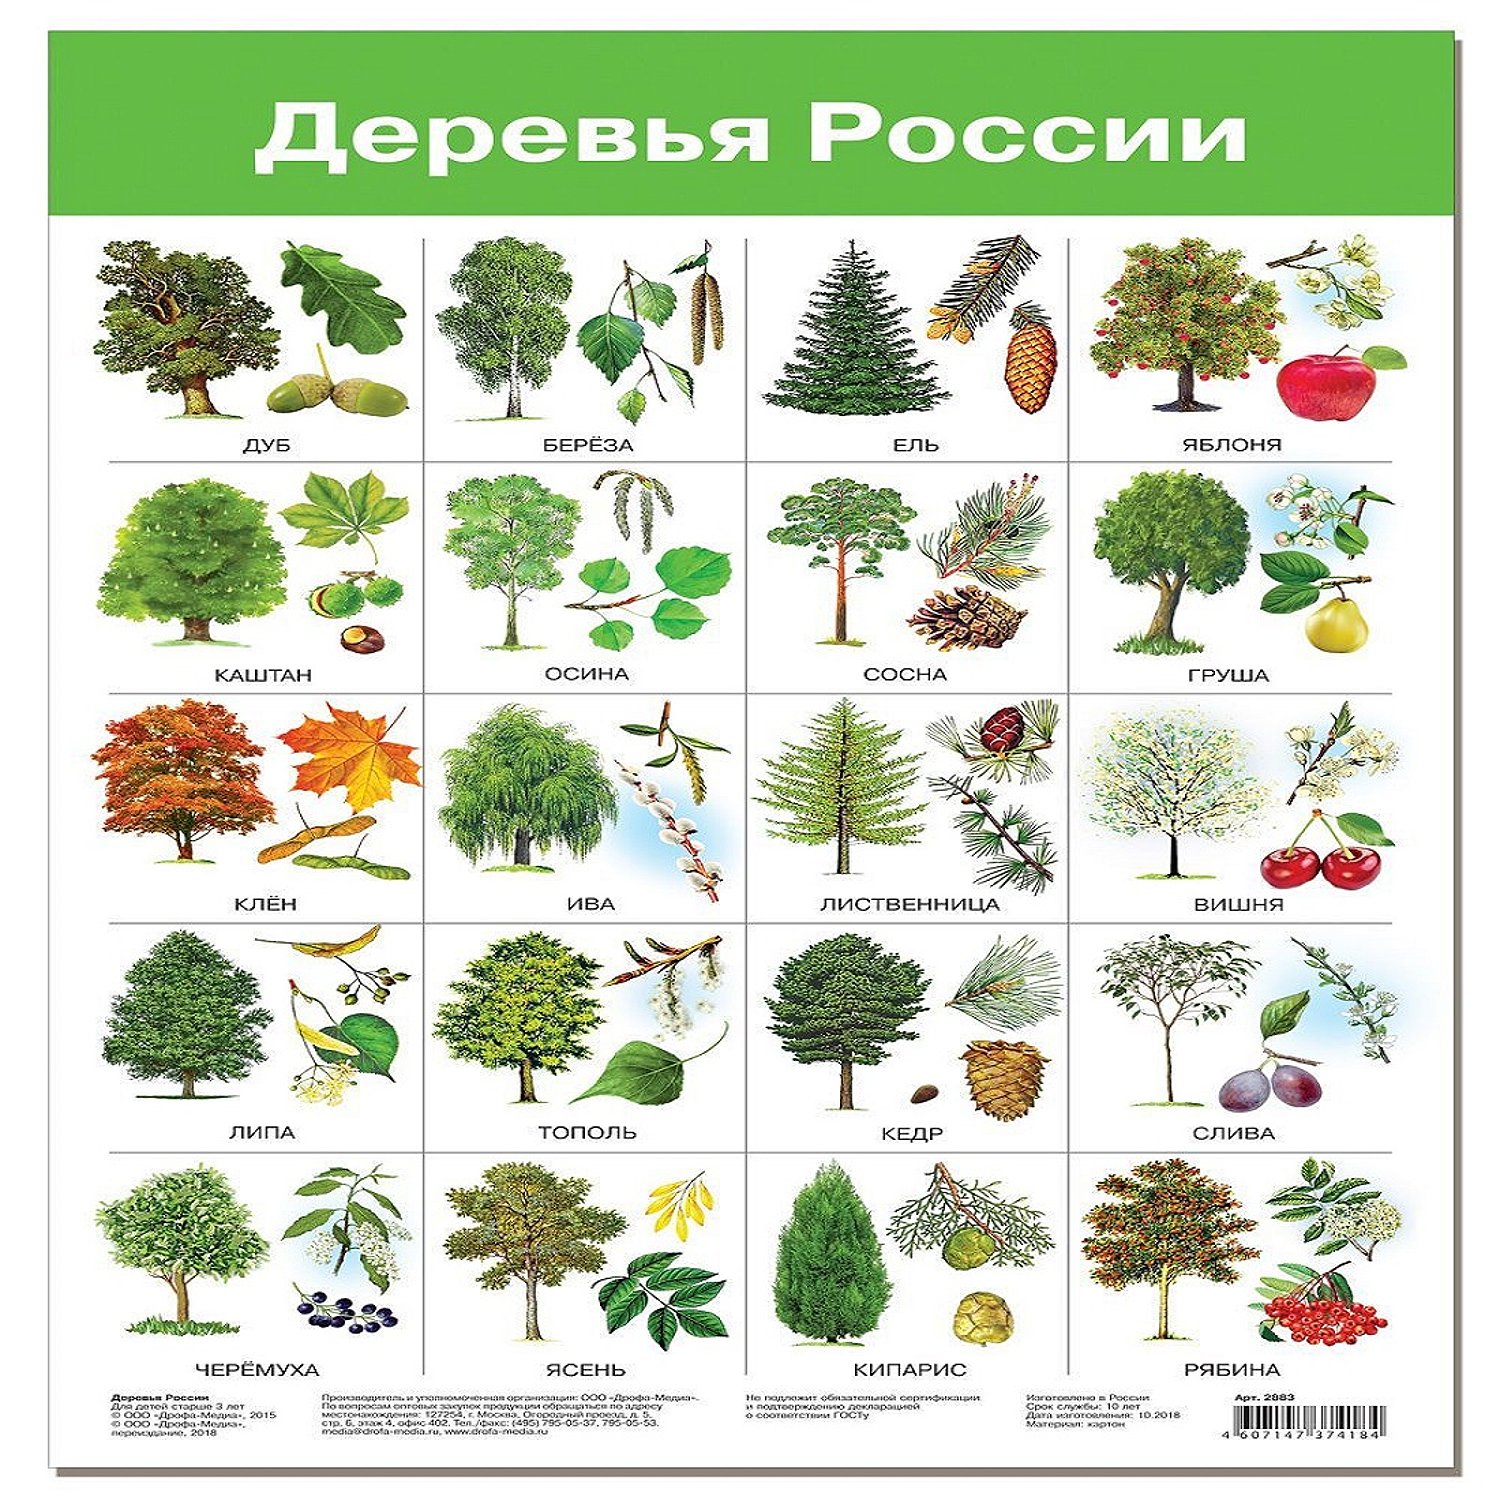 листья деревьев средней полосы россии фото